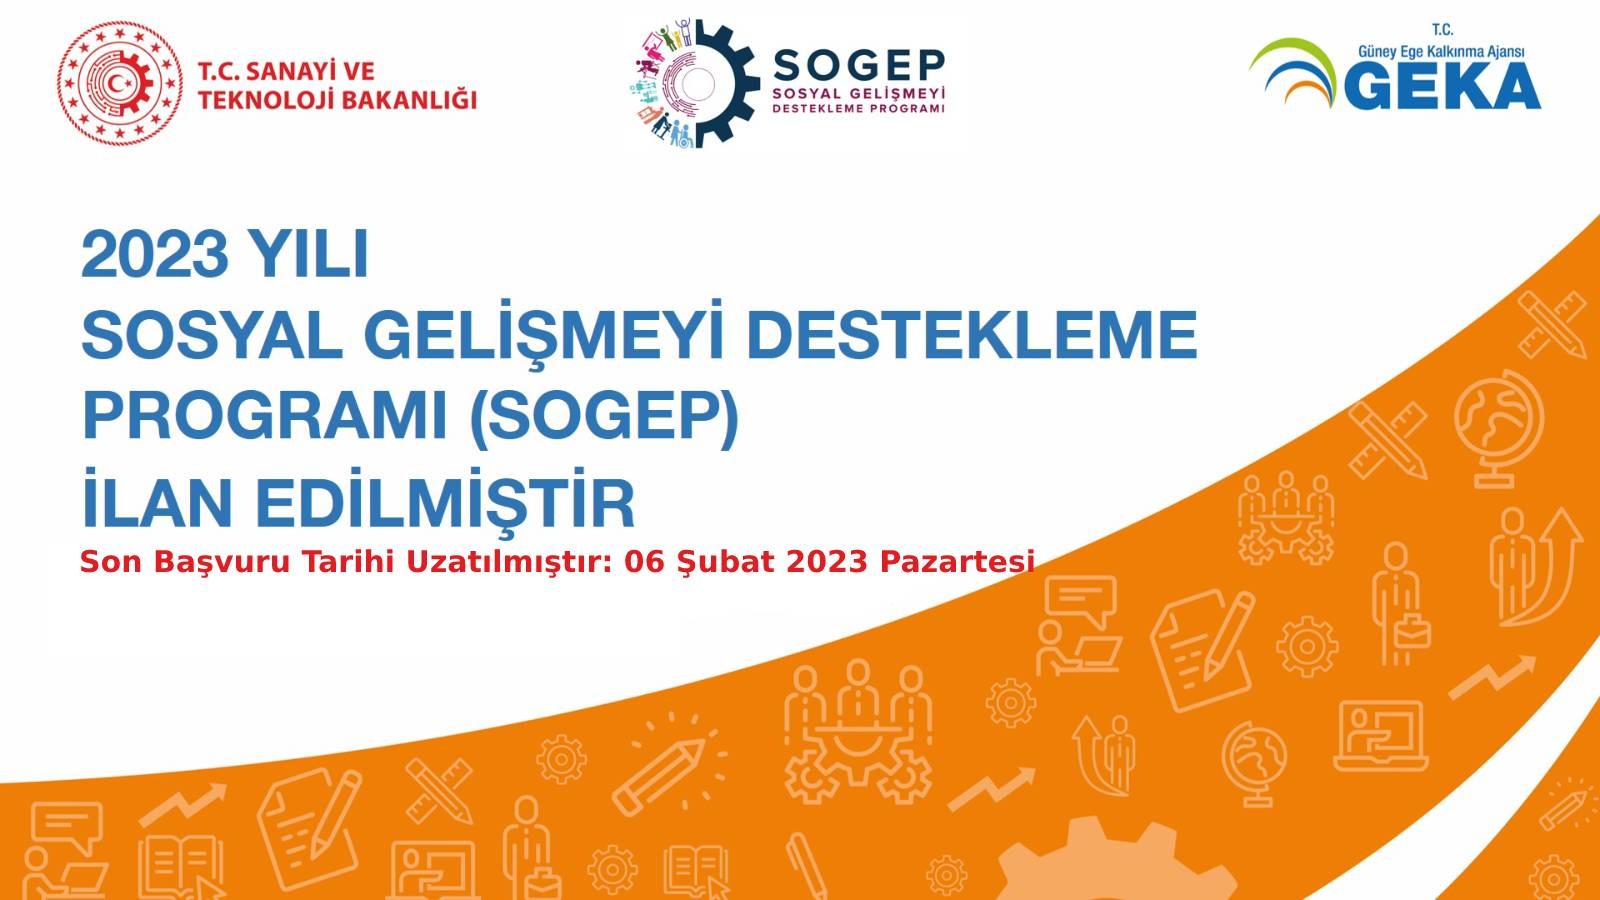 2023 Yılı Sosyal Gelişmeyi Destekleme Programı (SOGEP) son başvuru tarihi uzatılmıştır.